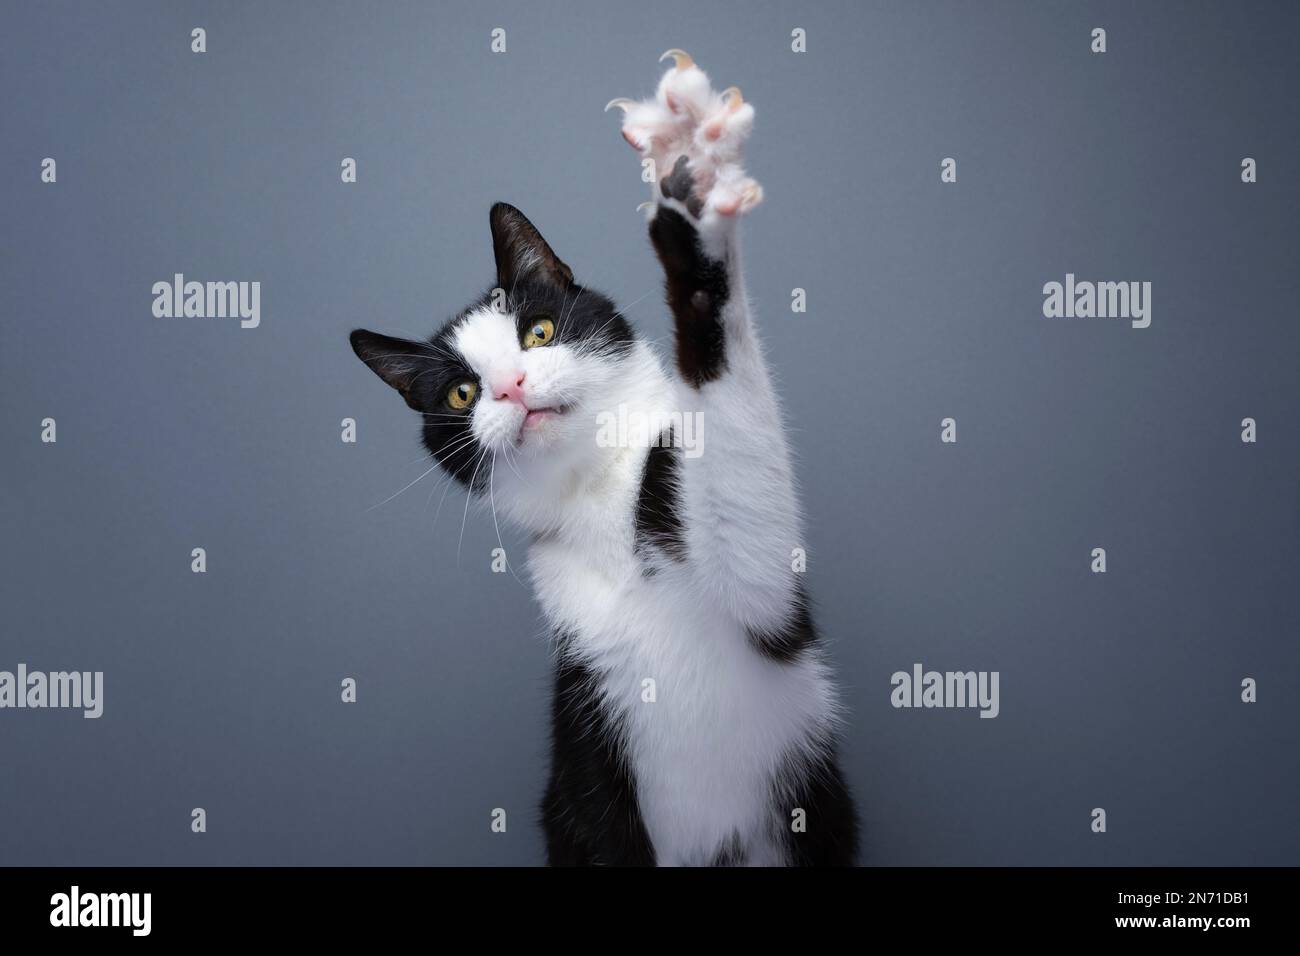 tuxedo ludique chat levant patte montrant des griffes sur fond gris avec espace de copie Banque D'Images